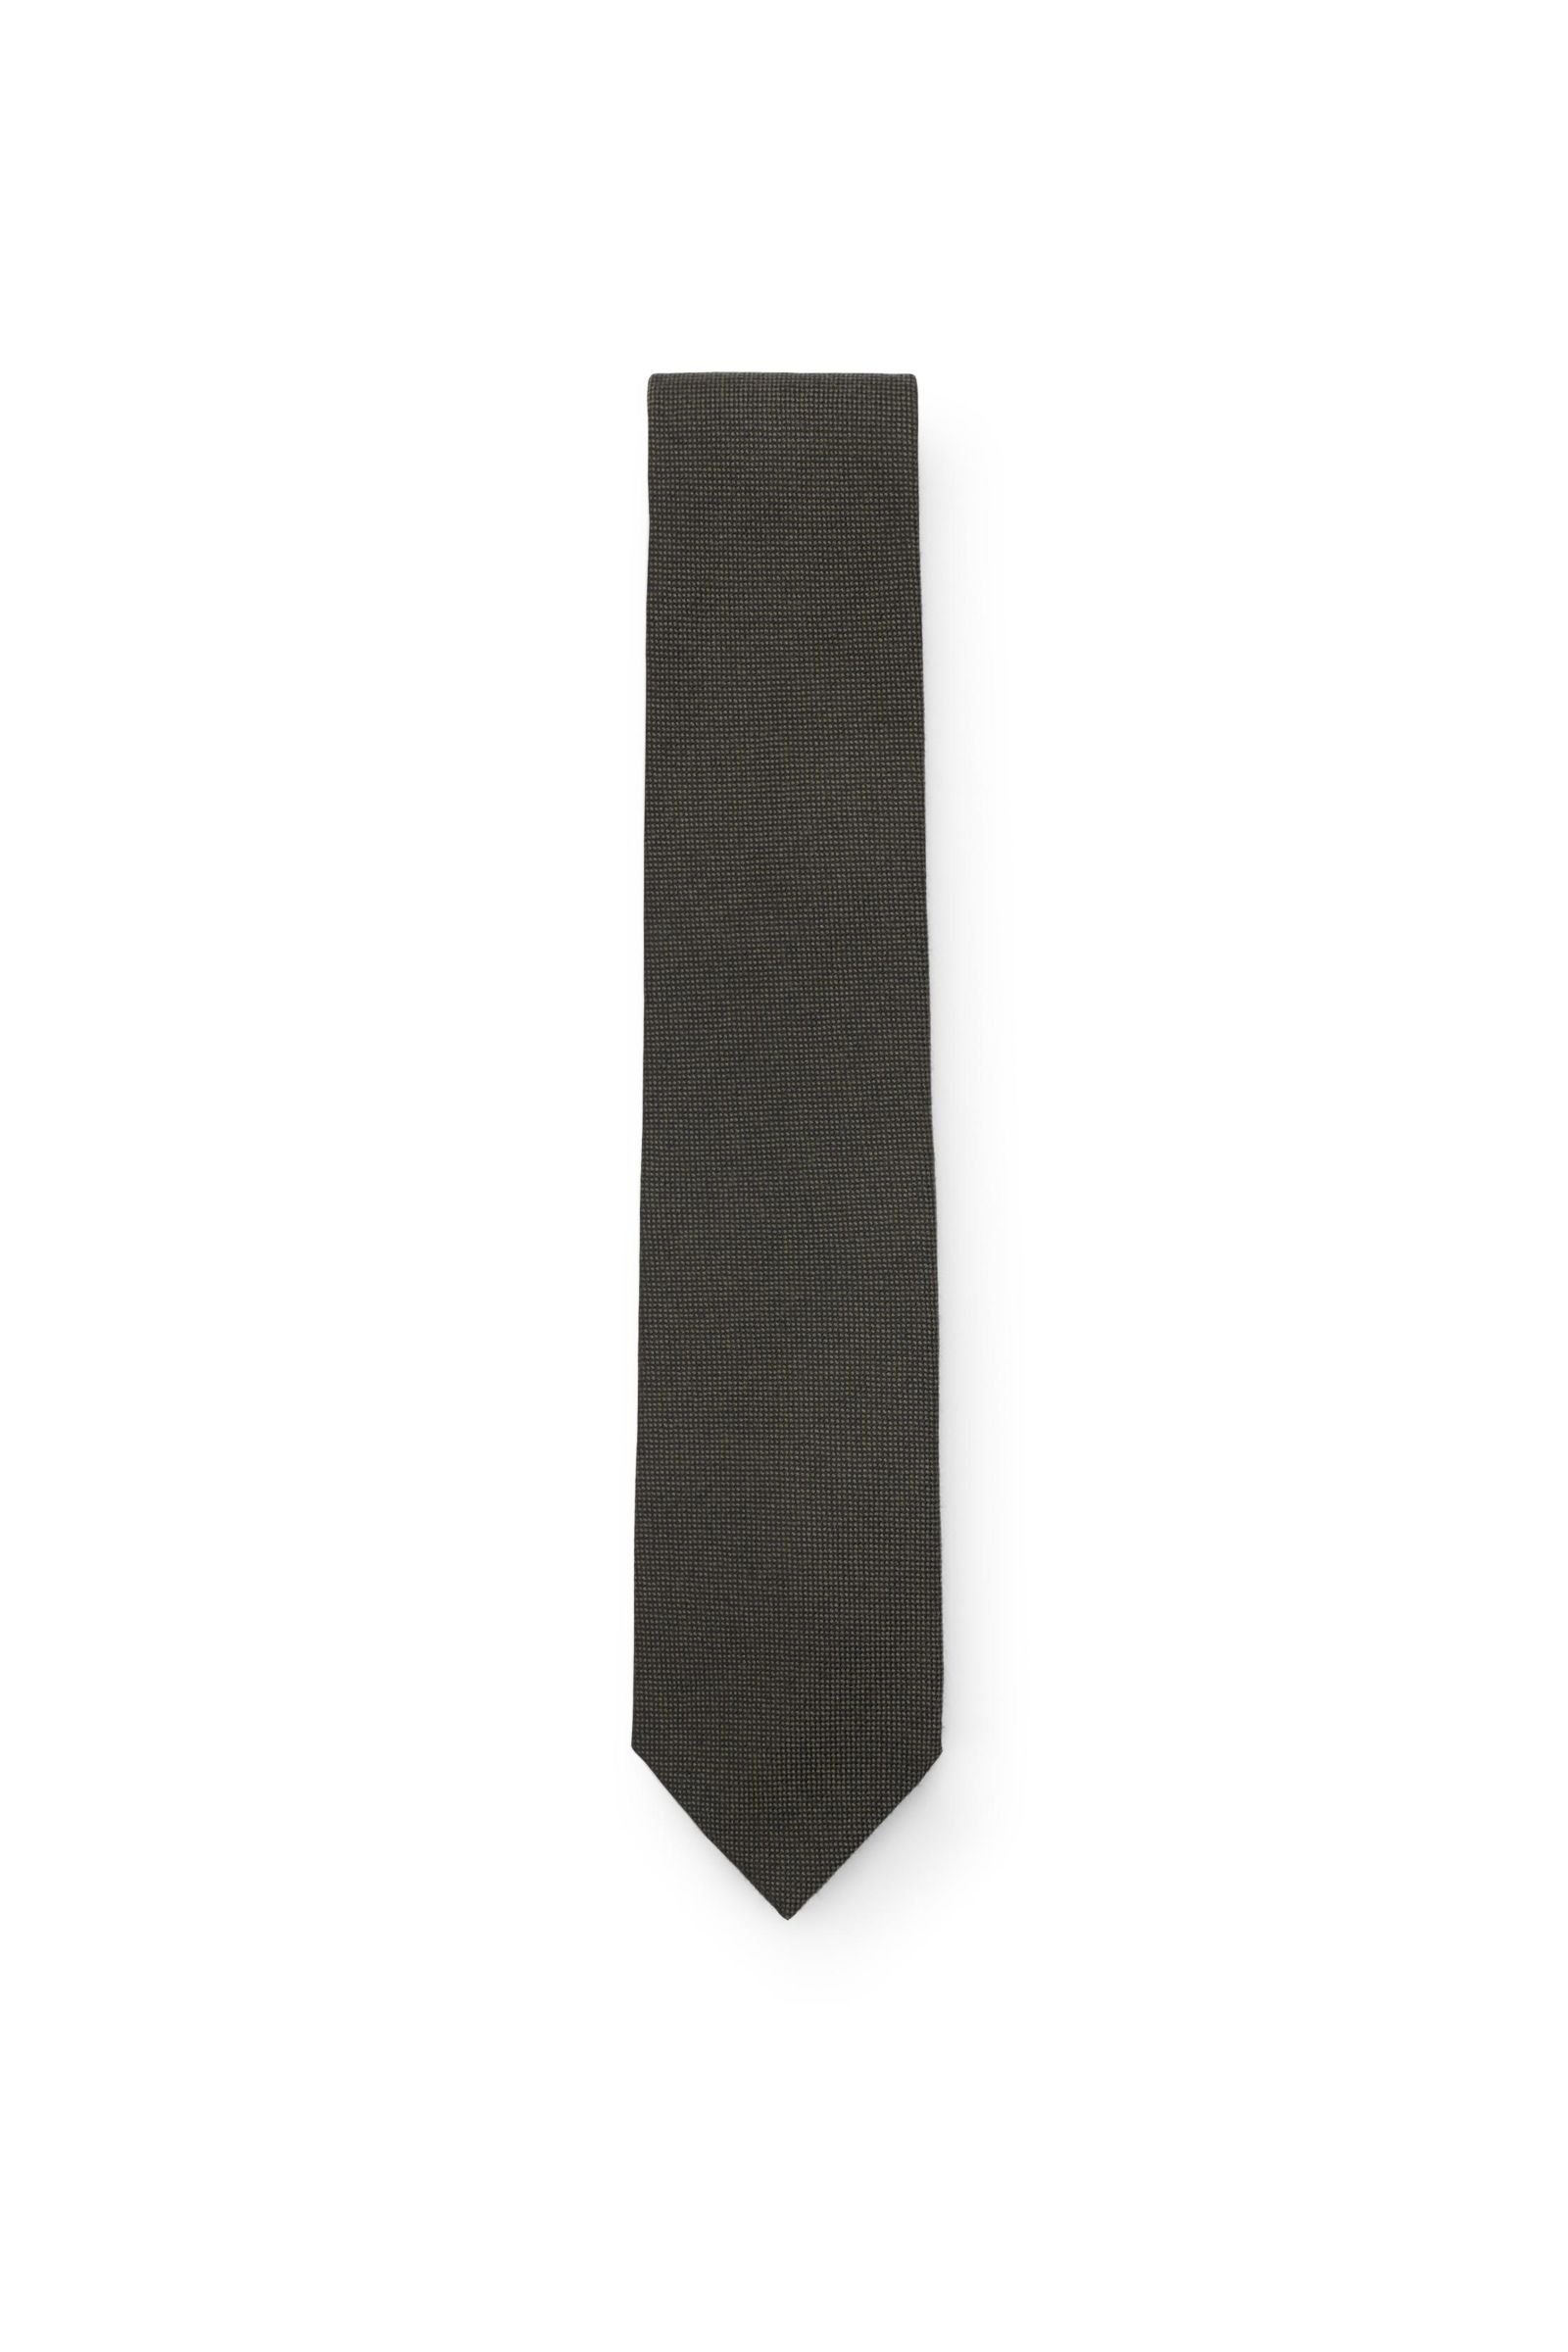 Cashmere Krawatte dark olive